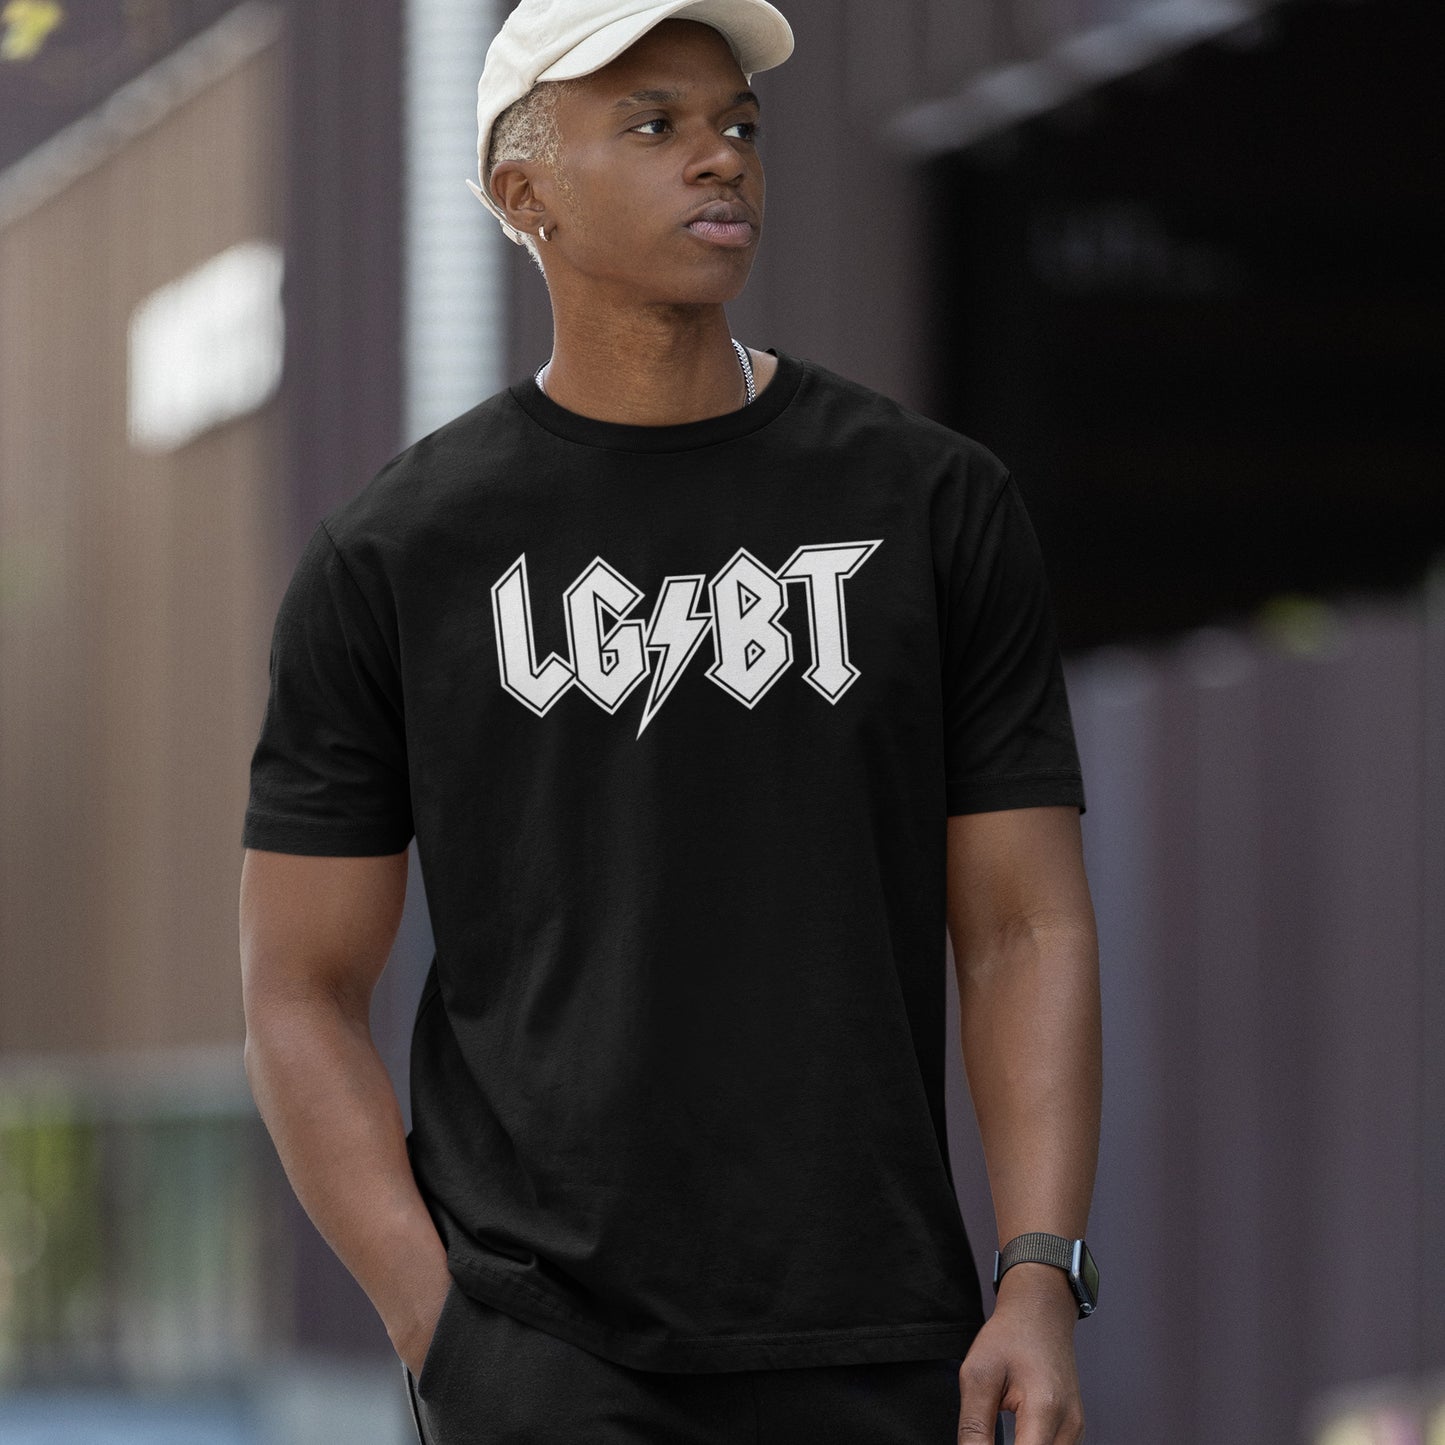 LGBTQ Rocks T-shirt